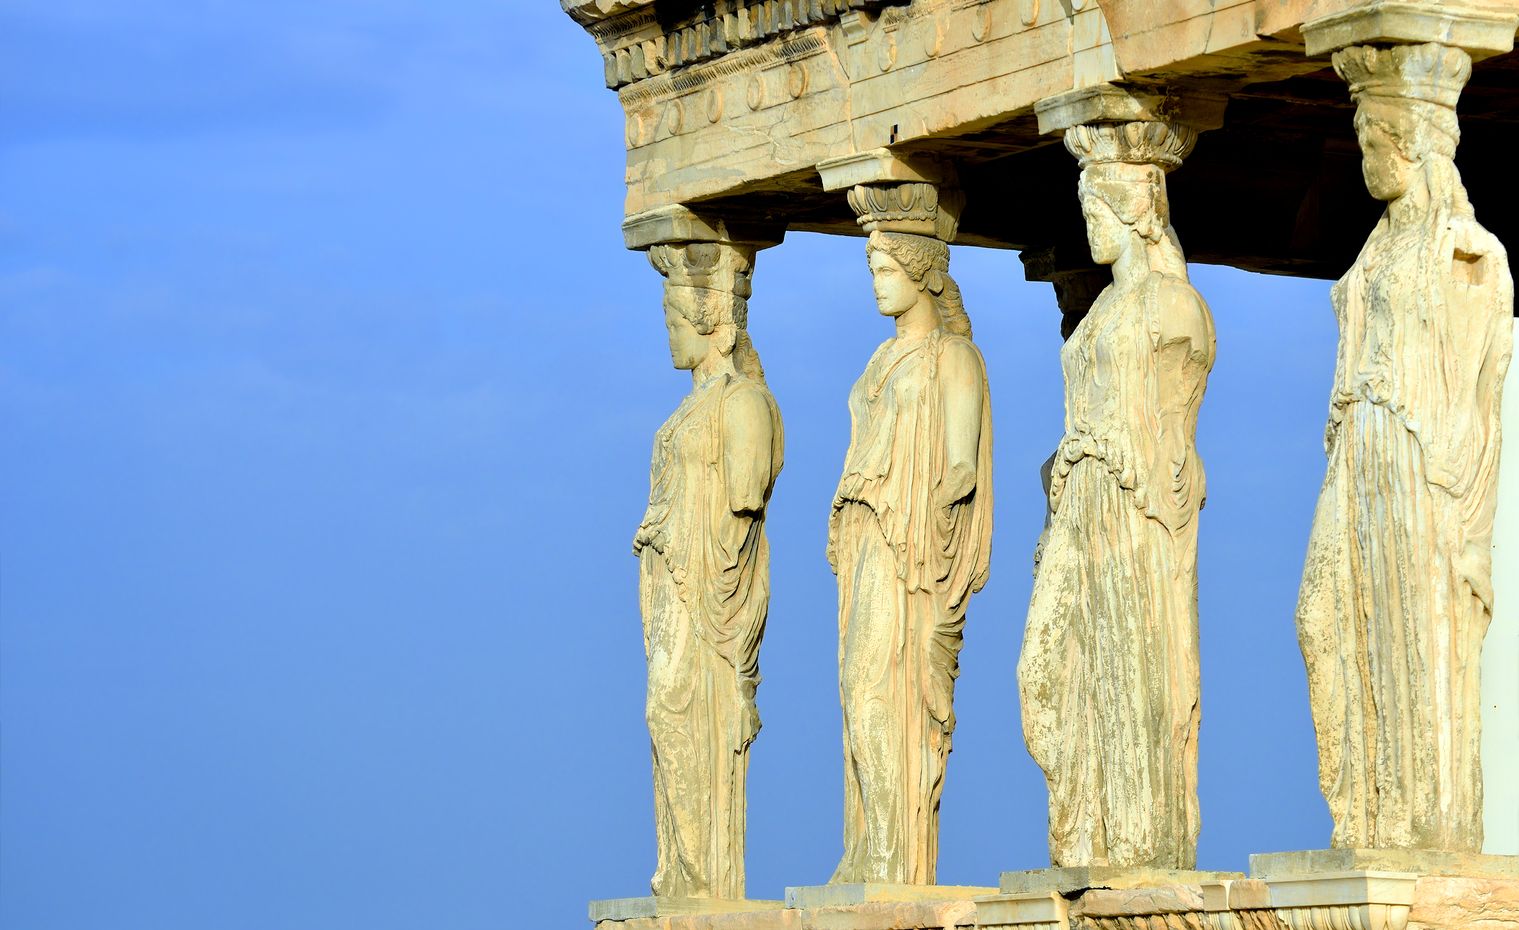 Caryatides, Erechteion, Parthenon on the Acropolis in Athens, Greece